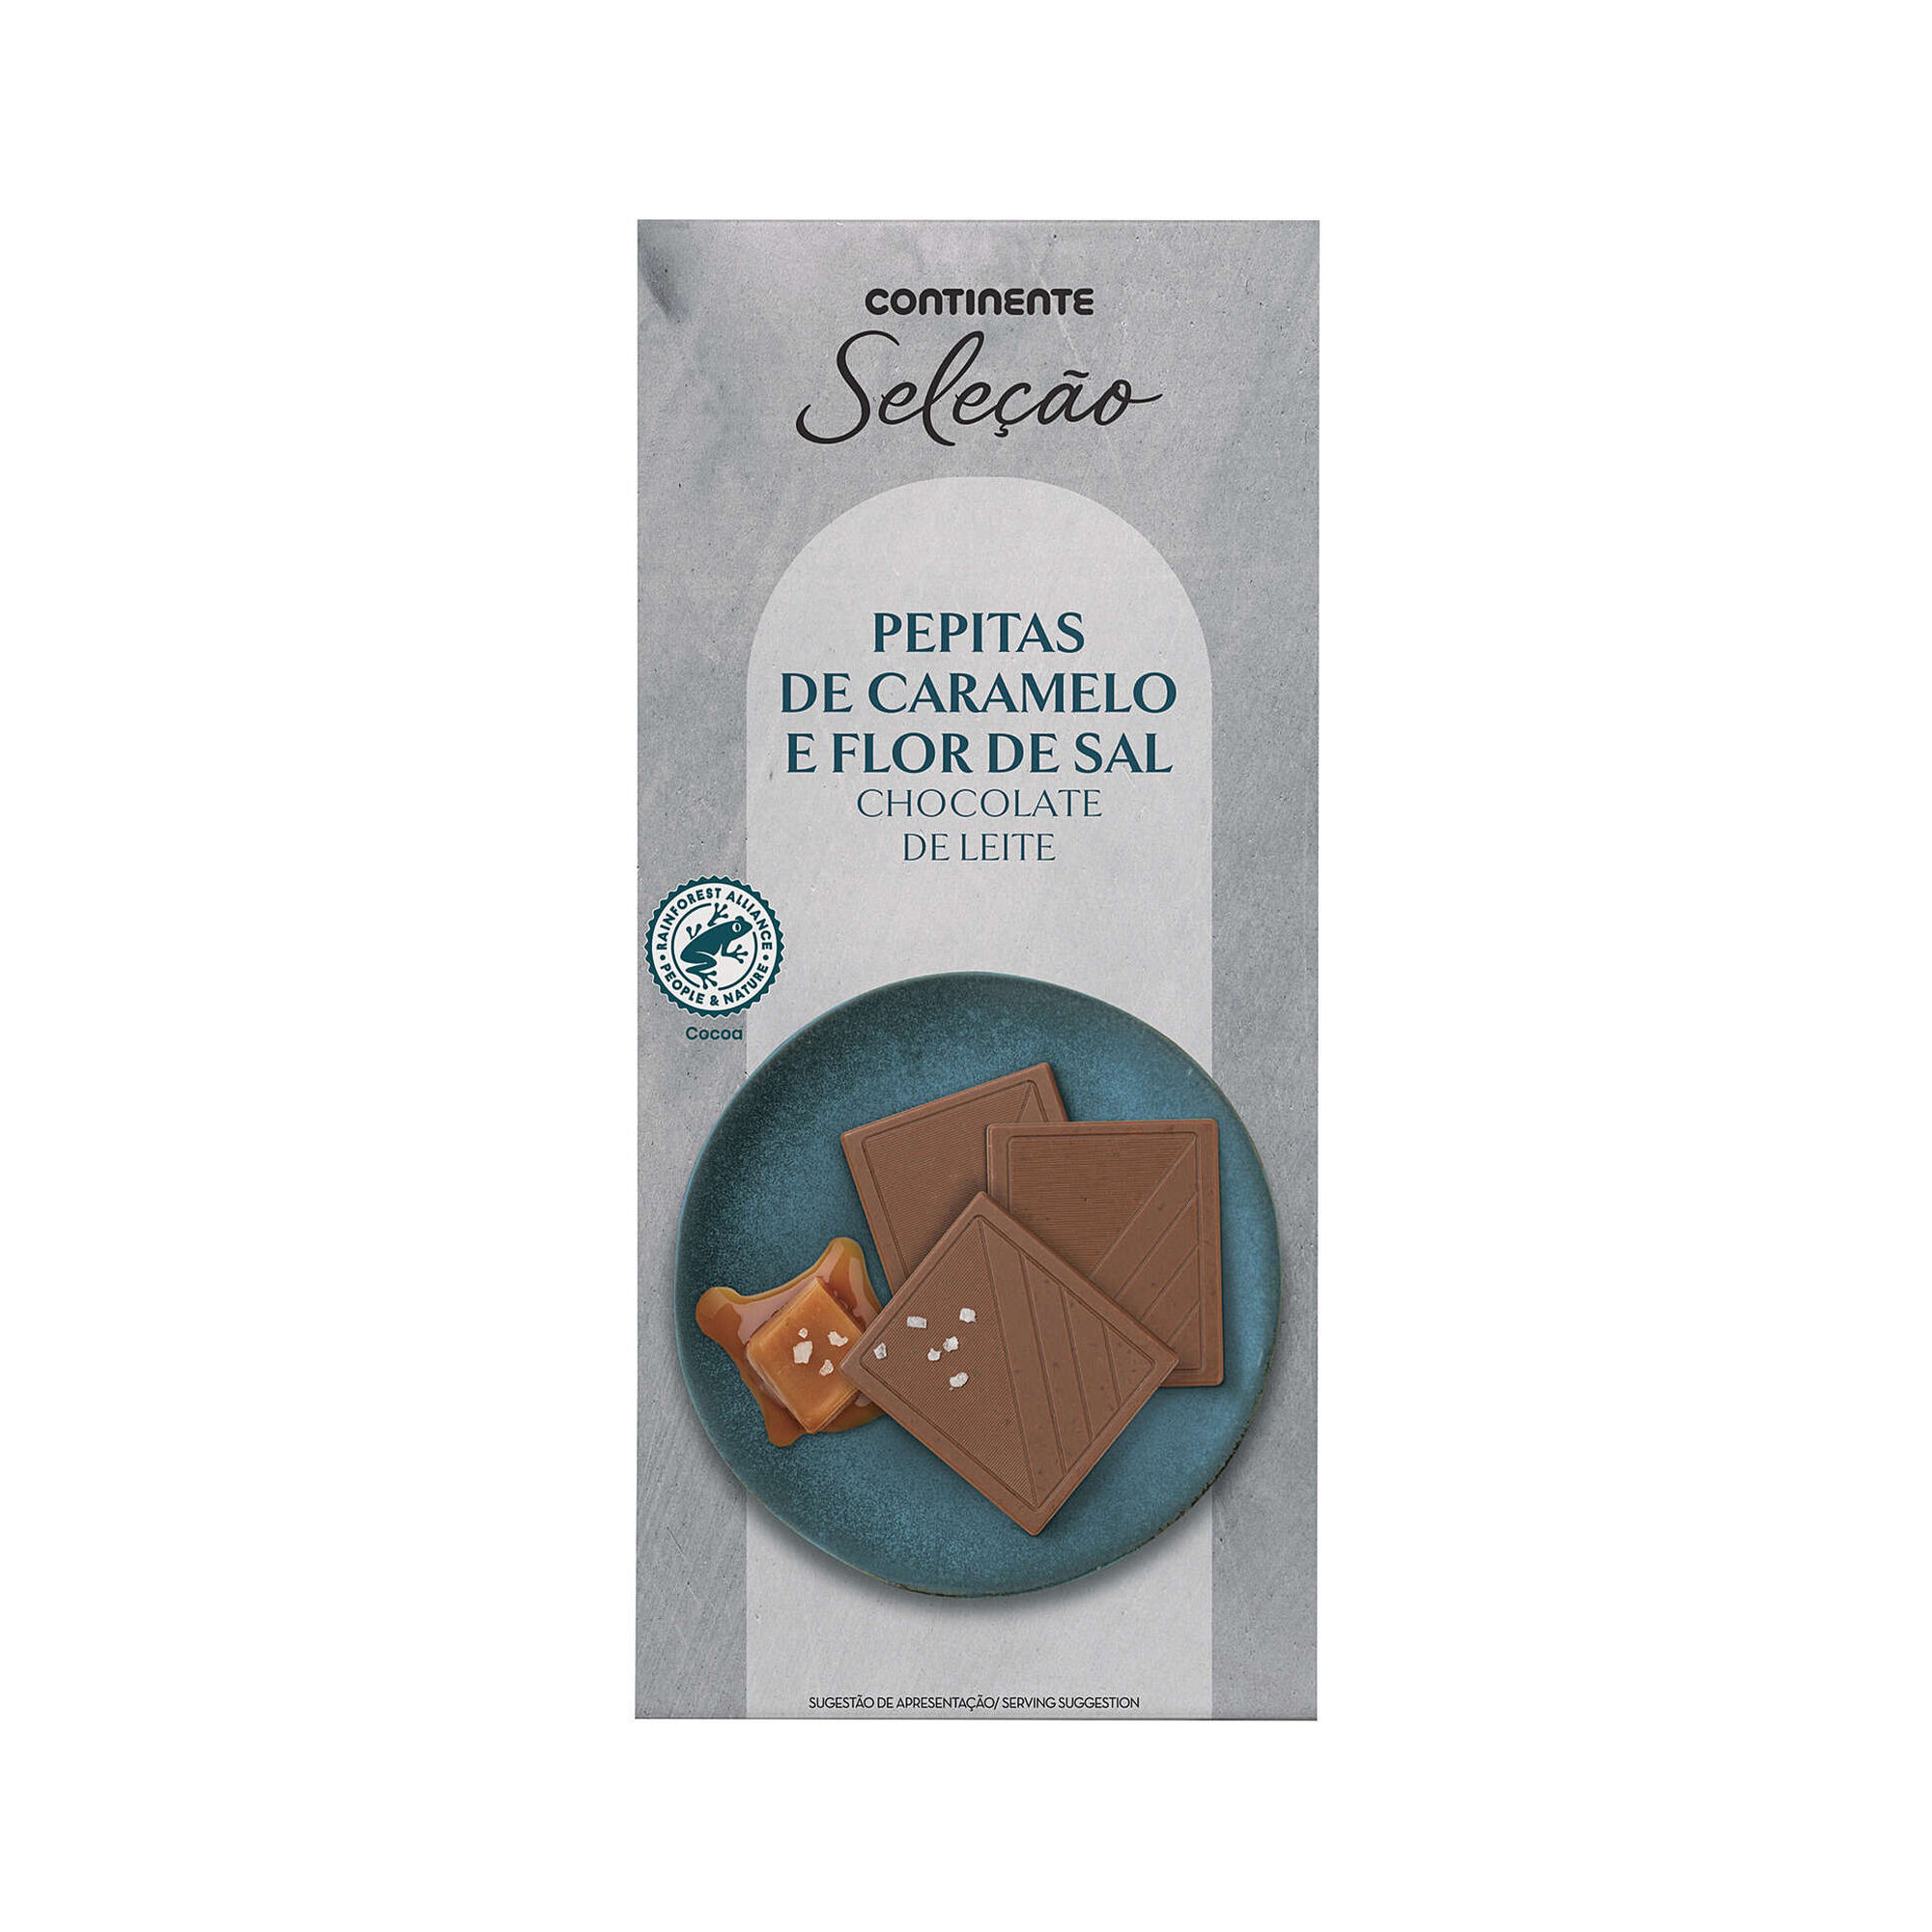 Tablete de Chocolate de Leite com Pepitas de Caramelo e Flor de Sal